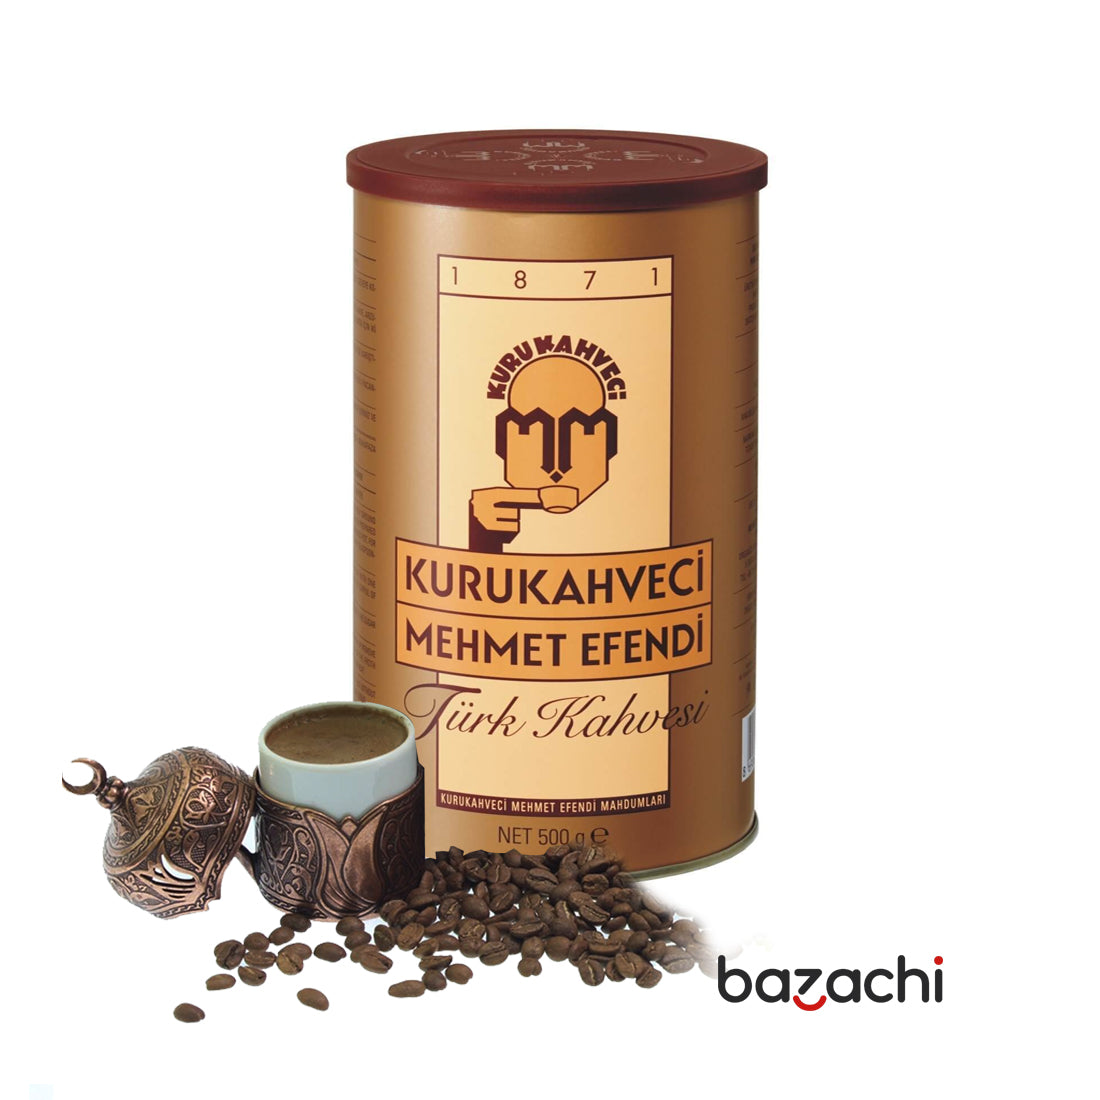 Kuru Kahveci Mehmet Efendi Original Turkish Coffee - 500g